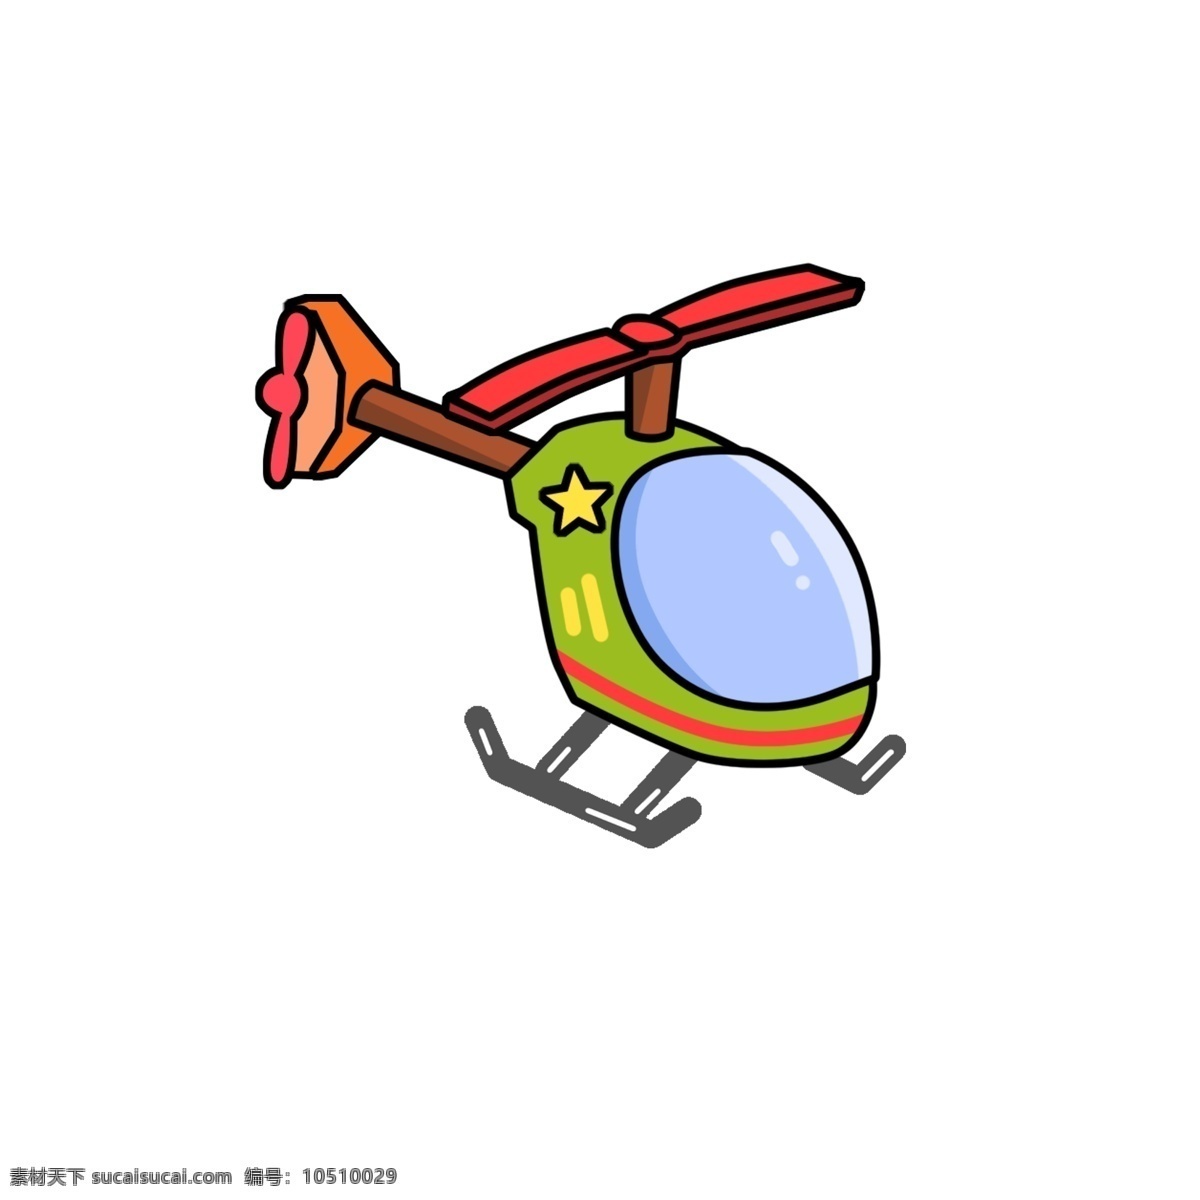 直升飞机 涂鸦 商用 元素 卡通 简约 飞机 插画 玩具 涂鸦设计 psd设计